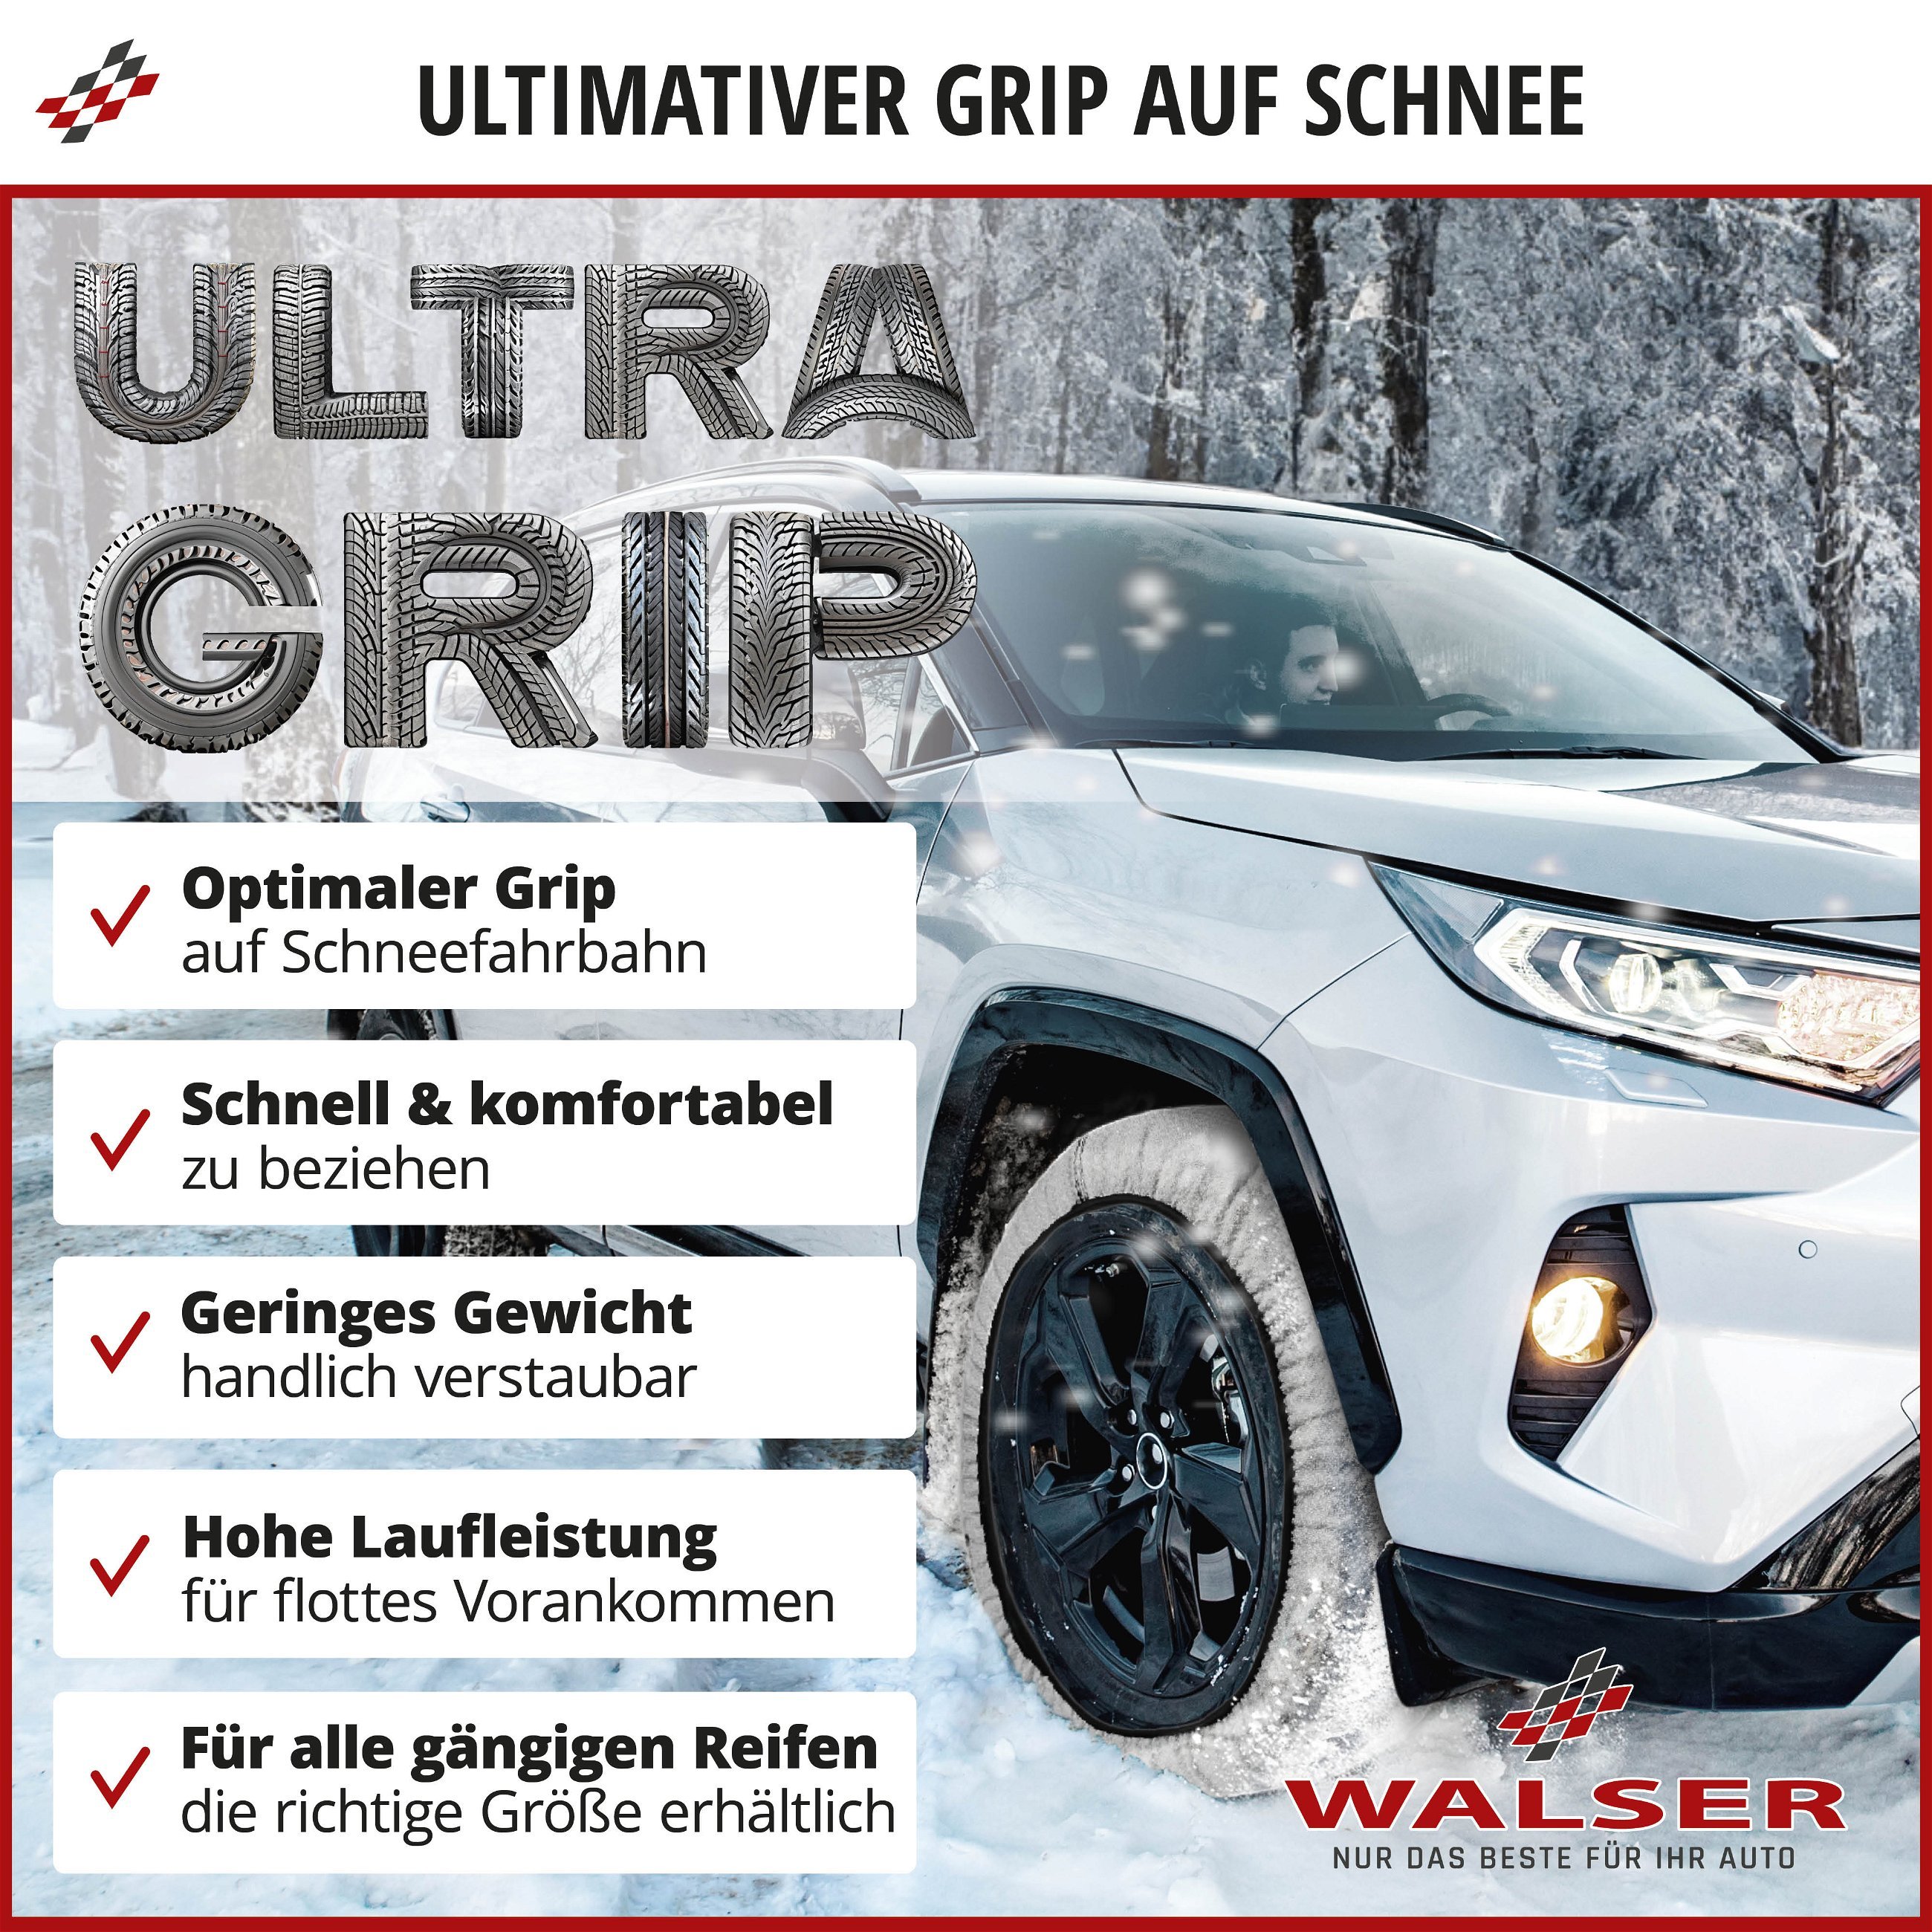 Premium Schneeketten Alternative Ultra Grip XS, Textil Schneeketten, Schneesocken 2er Set weiß